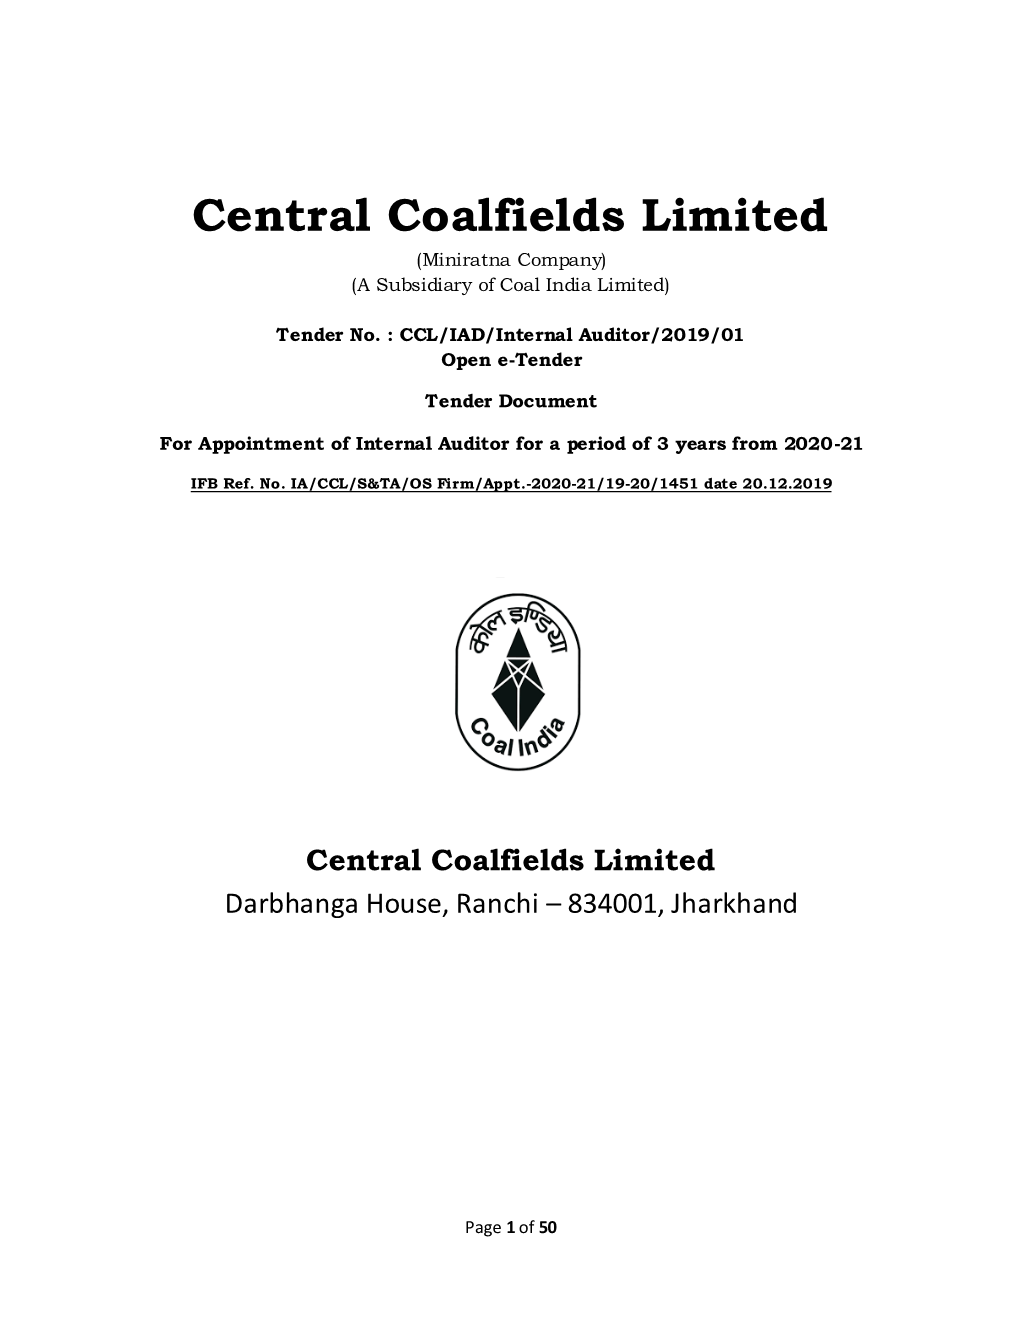 Central Coalfields Limited (Miniratna Company) (A Subsidiary of Coal India Limited)